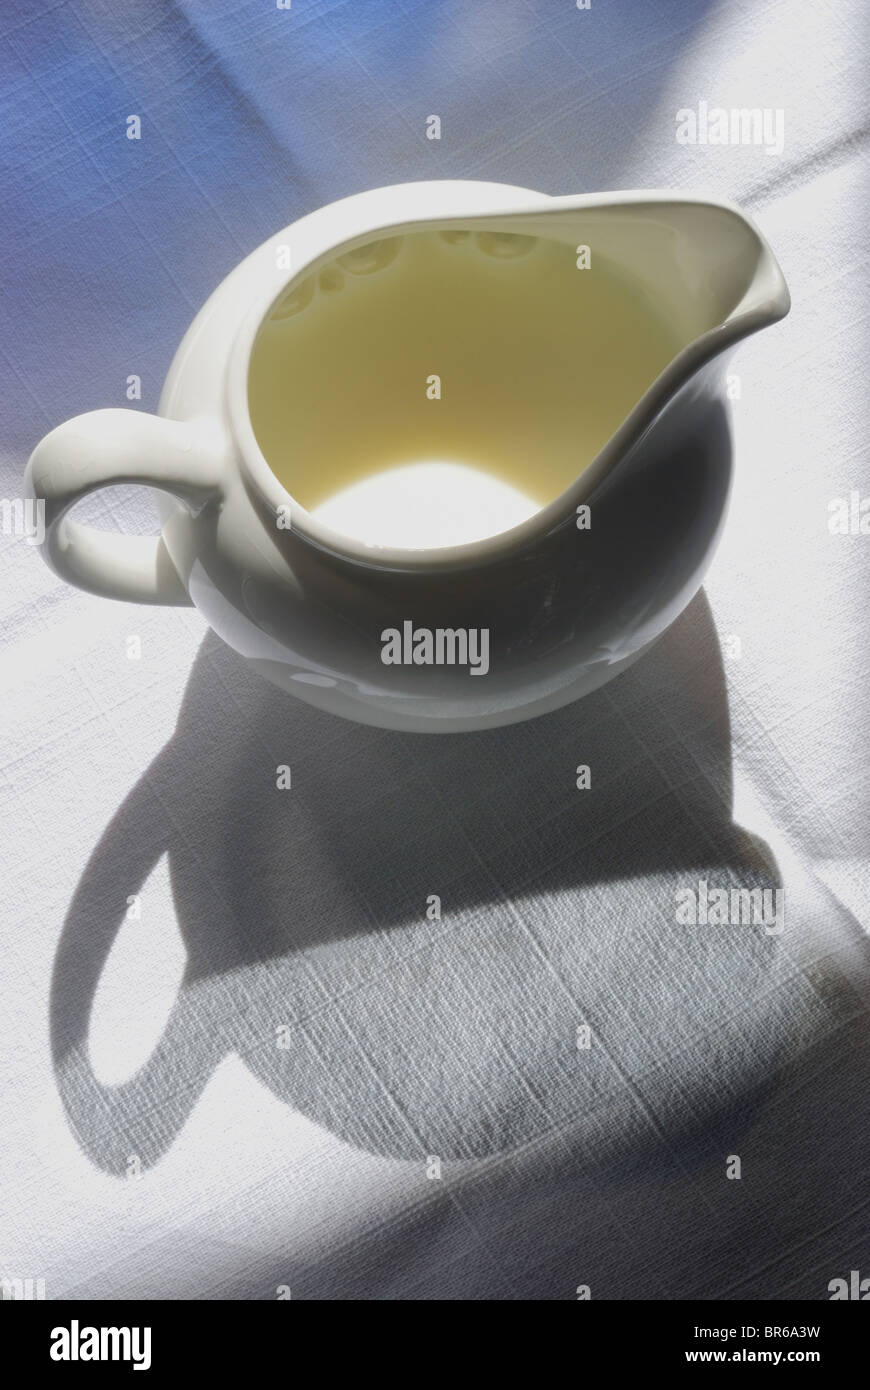 Cerámica Blanca Pequeña / cerámica, jarra de leche/crema jarra sobre una textura de fondo de lino. Gráfico con profundas sombras. Foto de stock